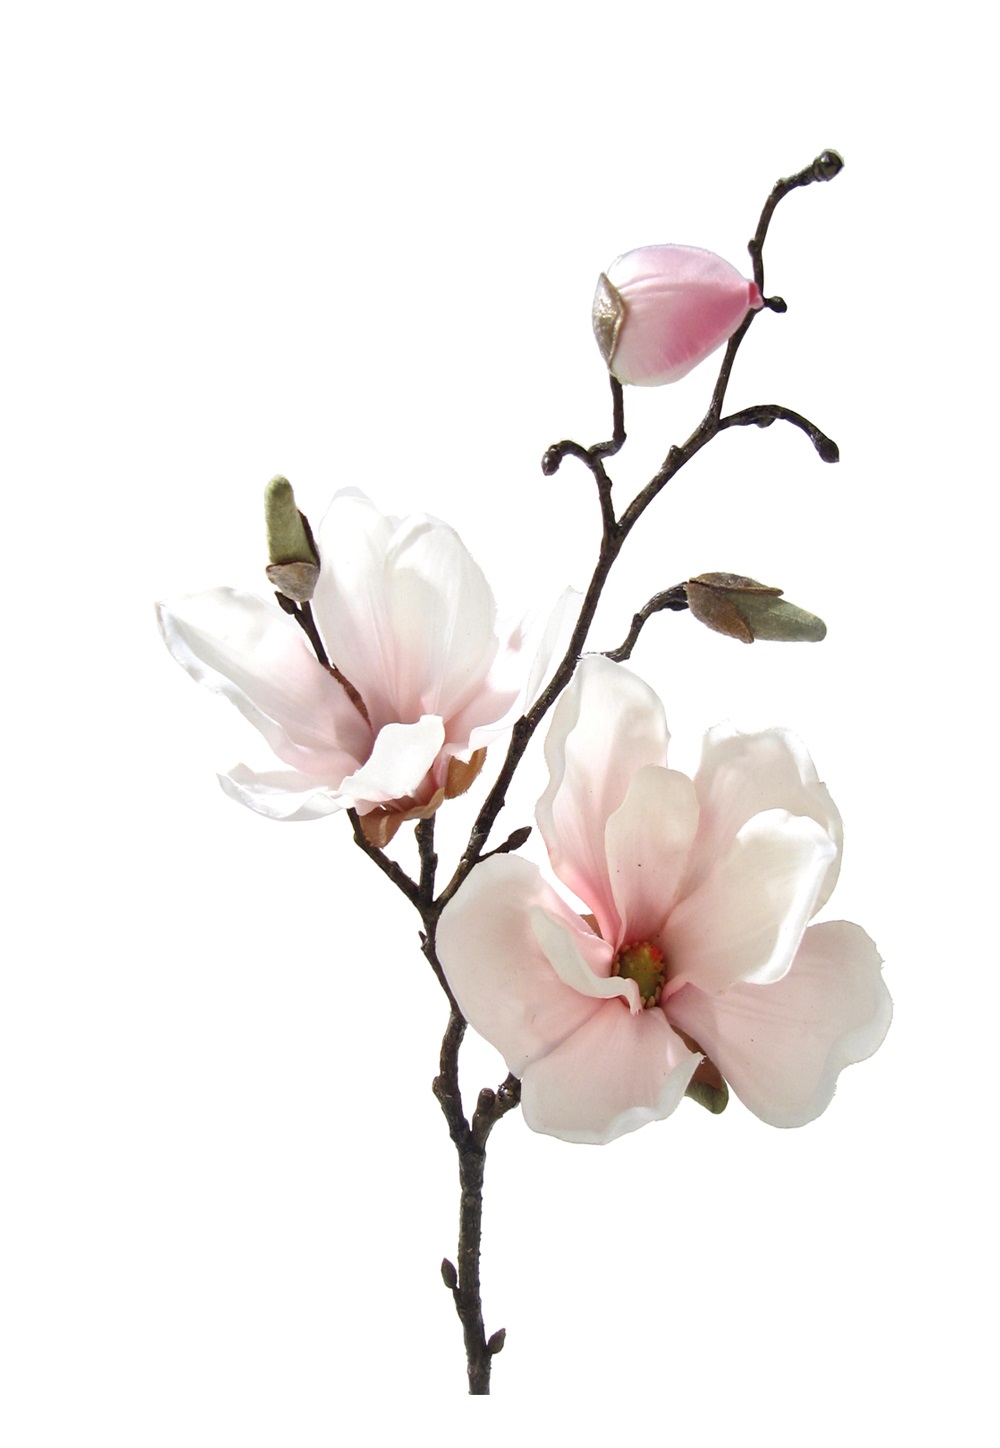 Magnolienzweig Magnolien Zimmerpflanze Kunstblume Künstliche Pflanze Rosa 2019 